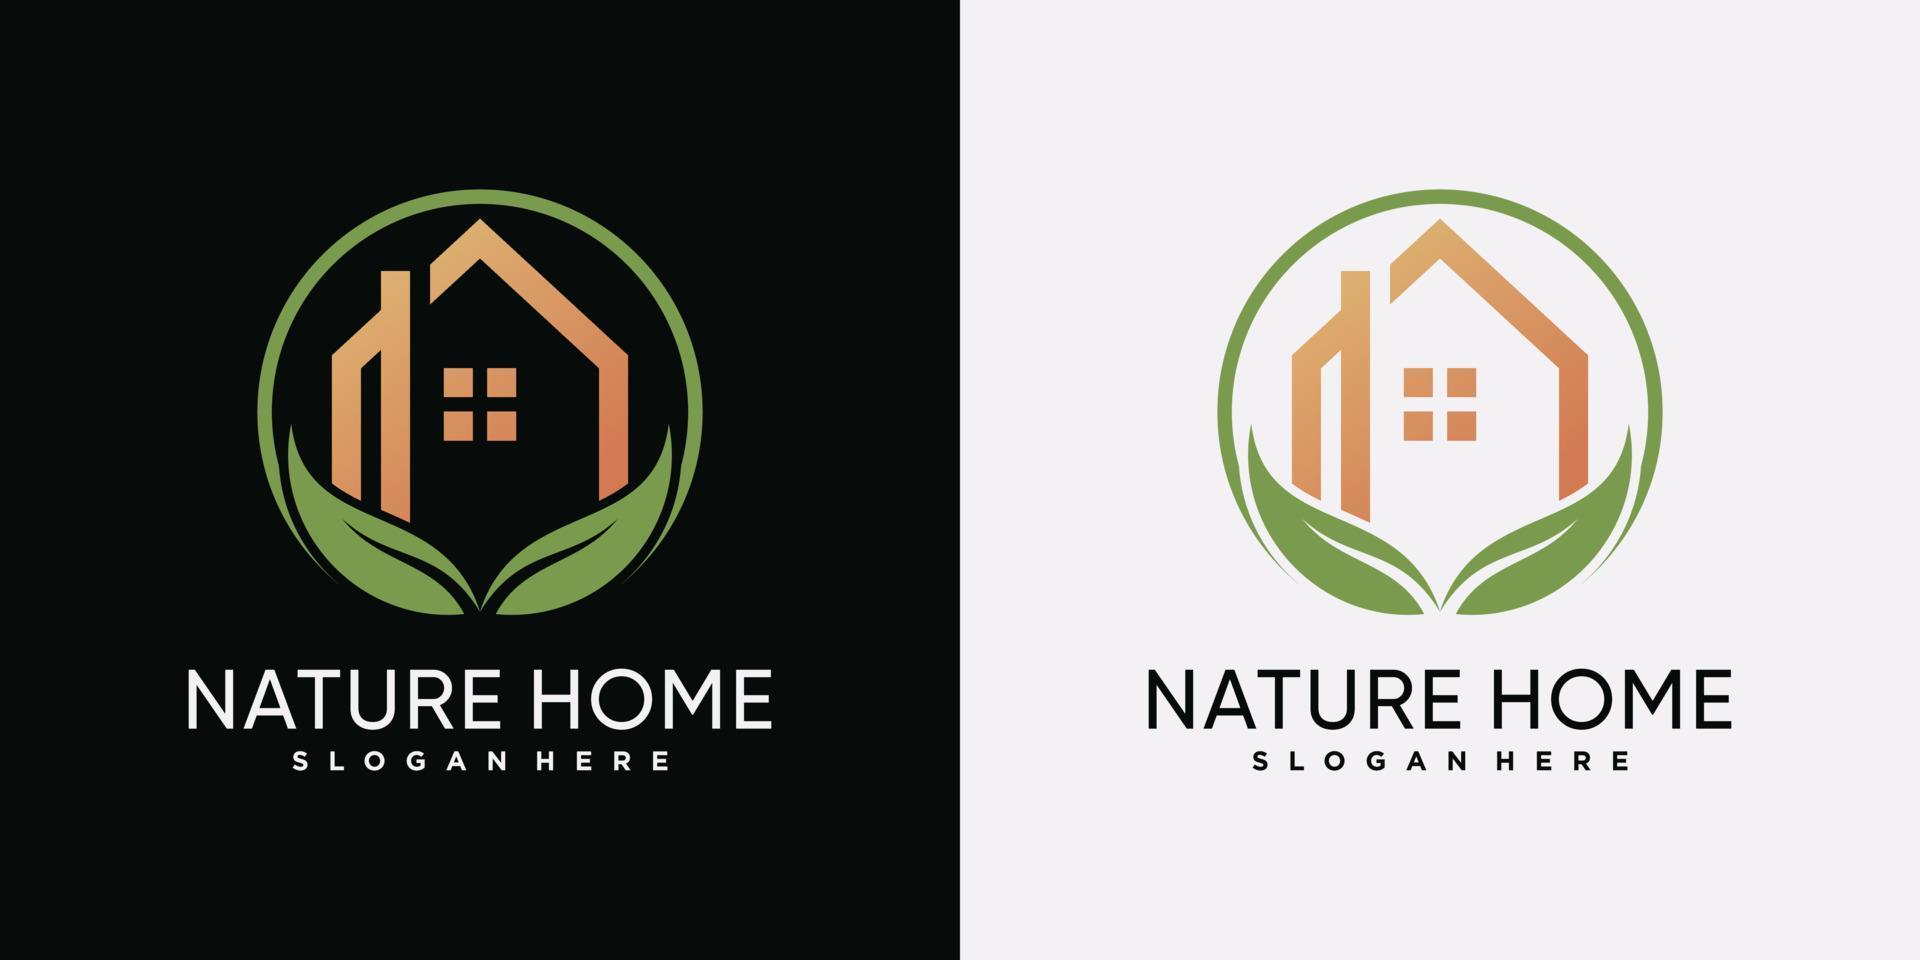 modèle de conception de logo maison nature avec feuille verte et élément créatif vecteur